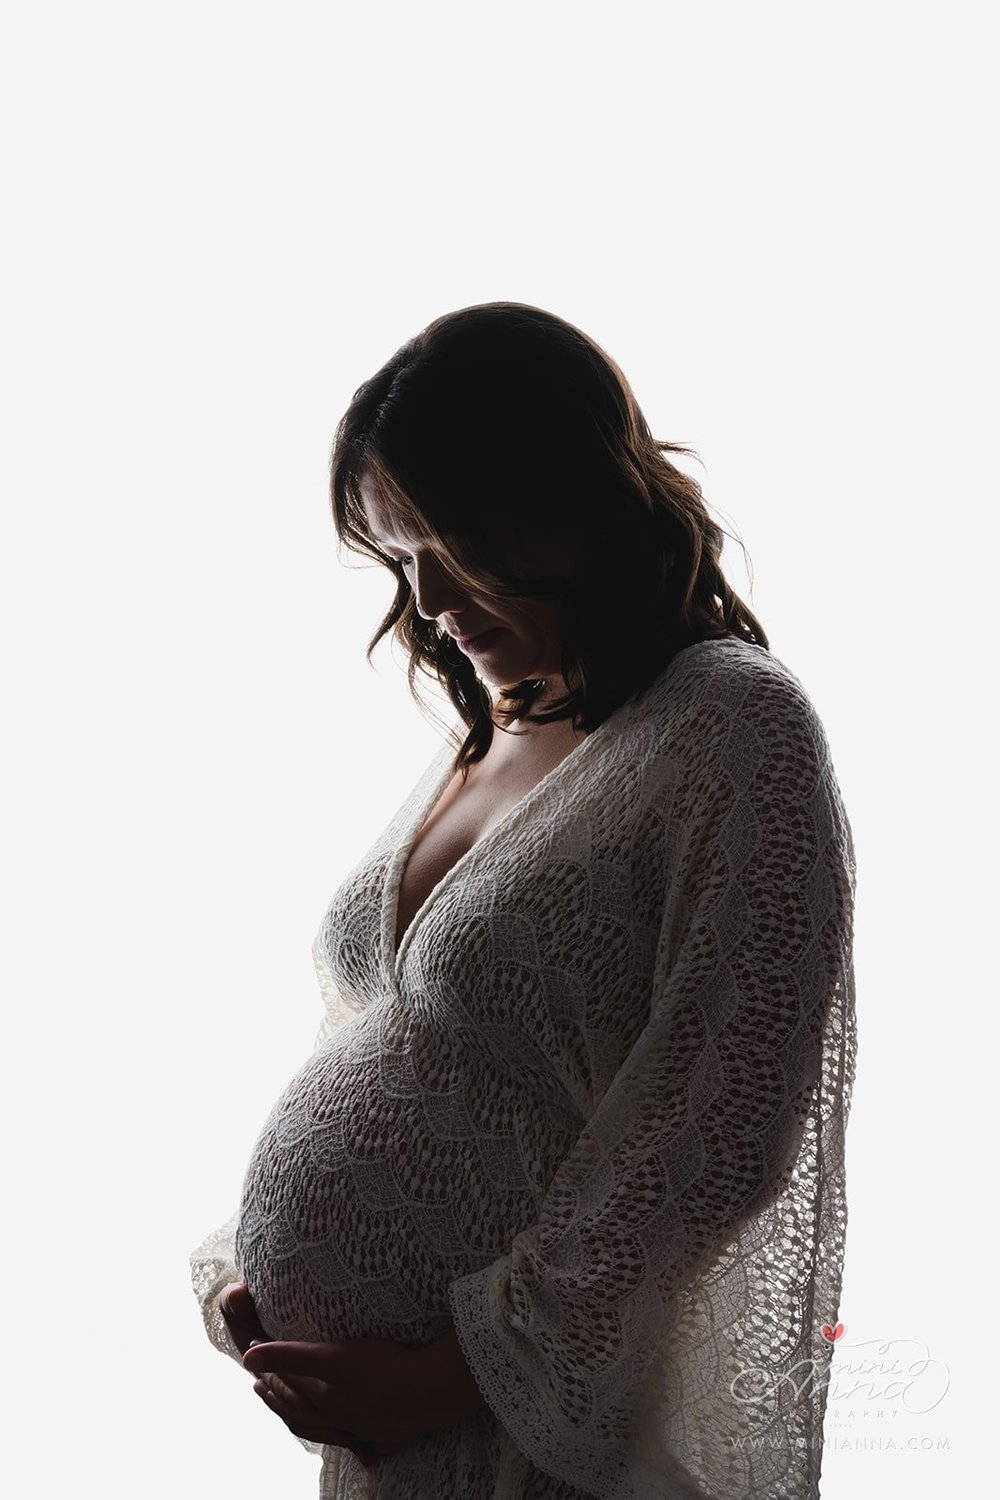 MiniAnna2023-HelenAlfonso-Maternity-Studio-3019-retouchedsrgb.jpg